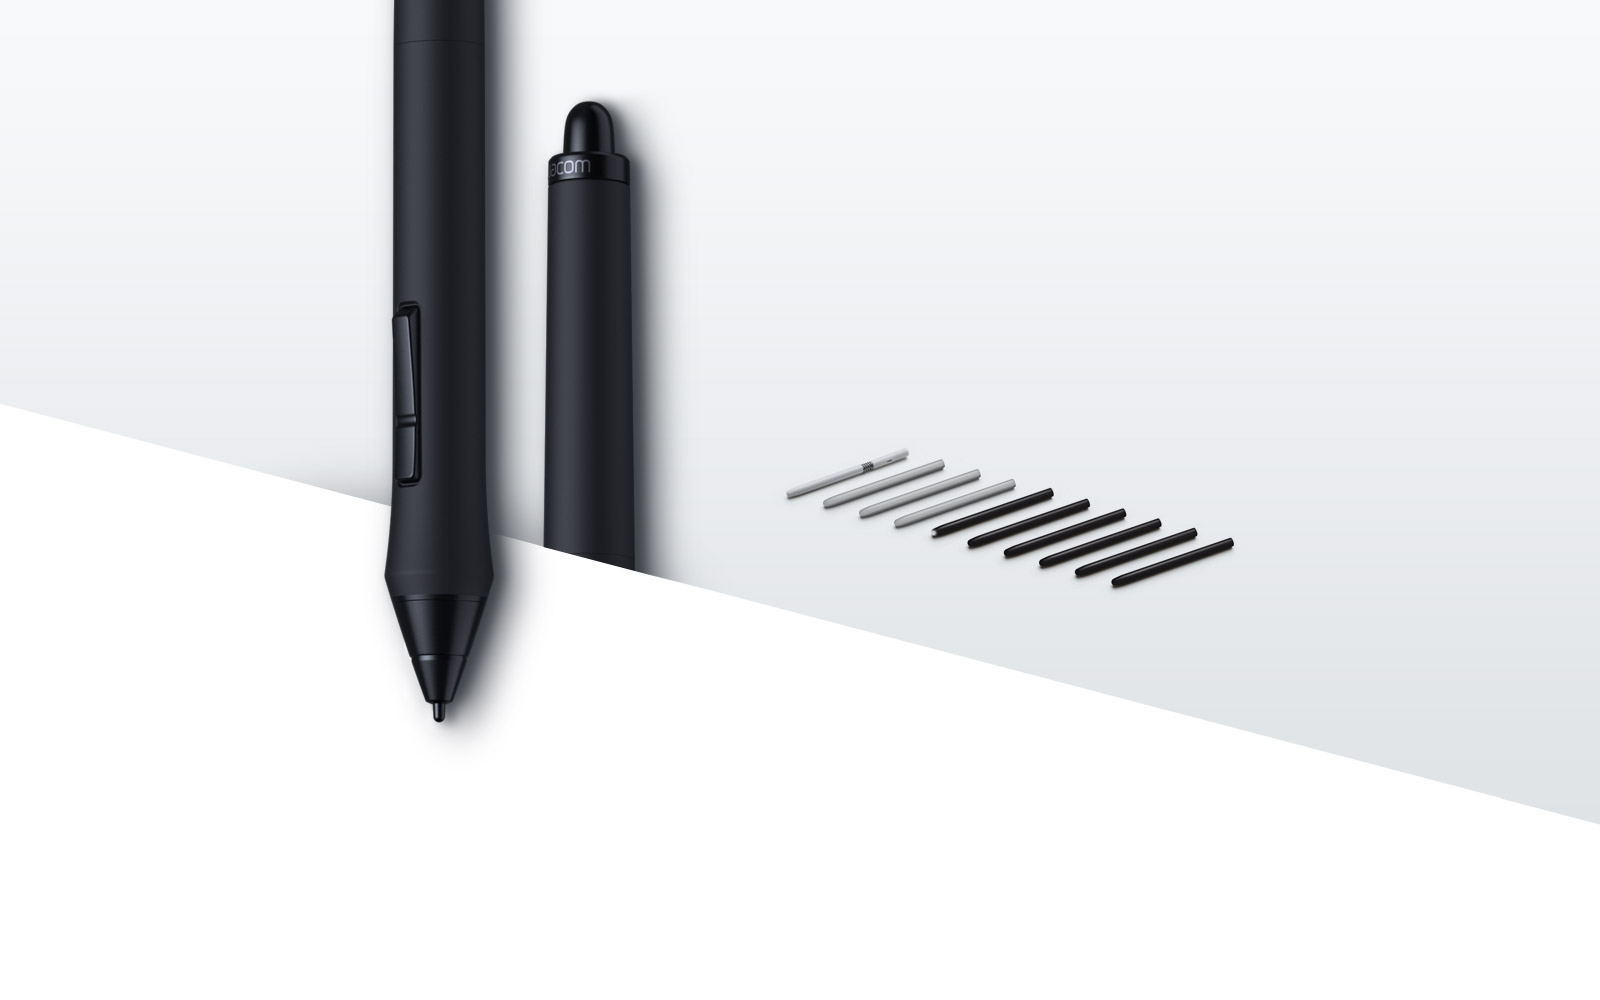 Tableta Gráfica Wacom Bamboo Create Pen & Touch, Medium, Español - CTH670L